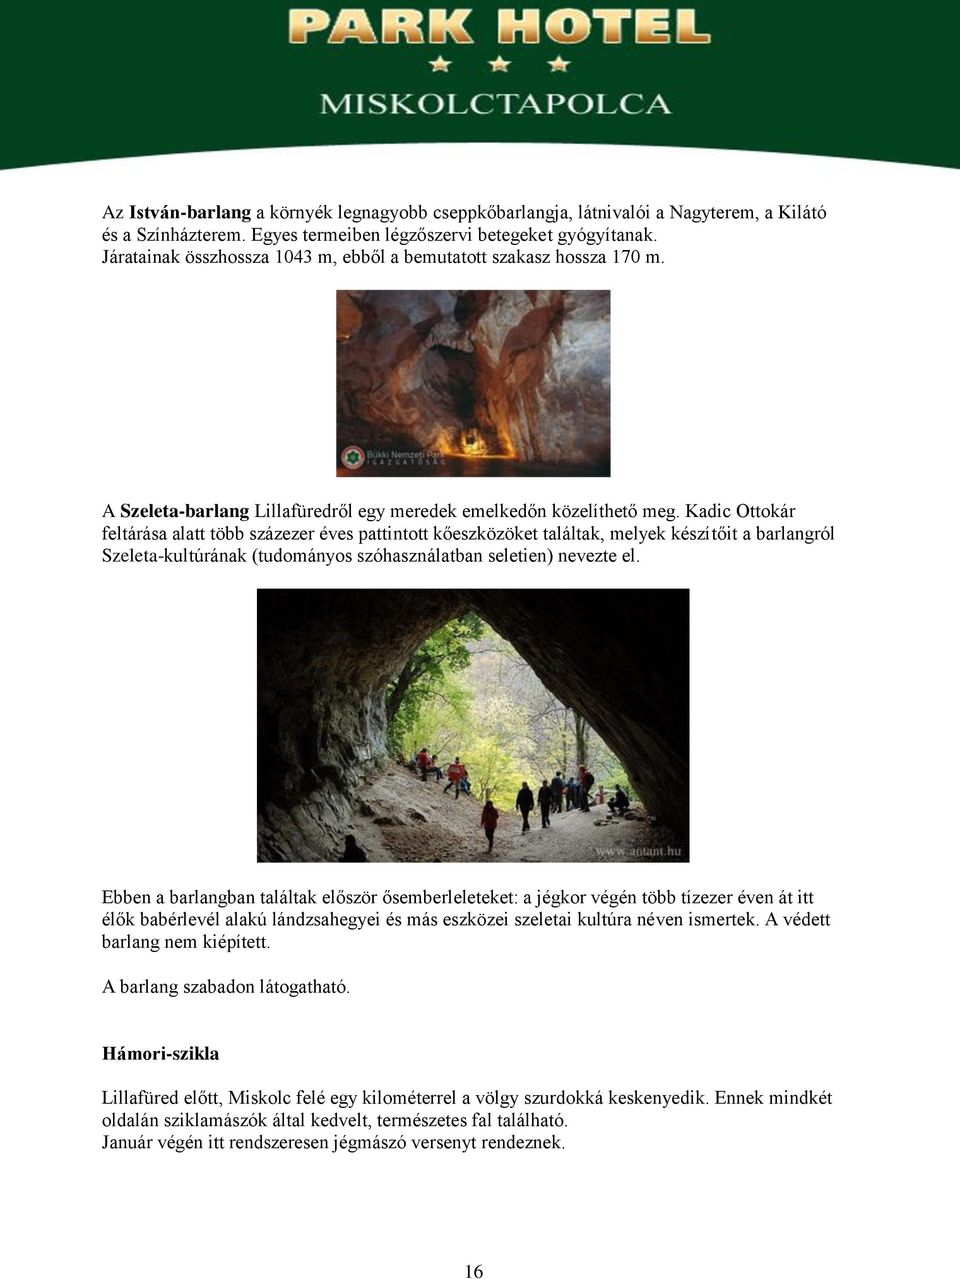 Kadic Ottokár feltárása alatt több százezer éves pattintott kőeszközöket találtak, melyek készítőit a barlangról Szeleta-kultúrának (tudományos szóhasználatban seletien) nevezte el.